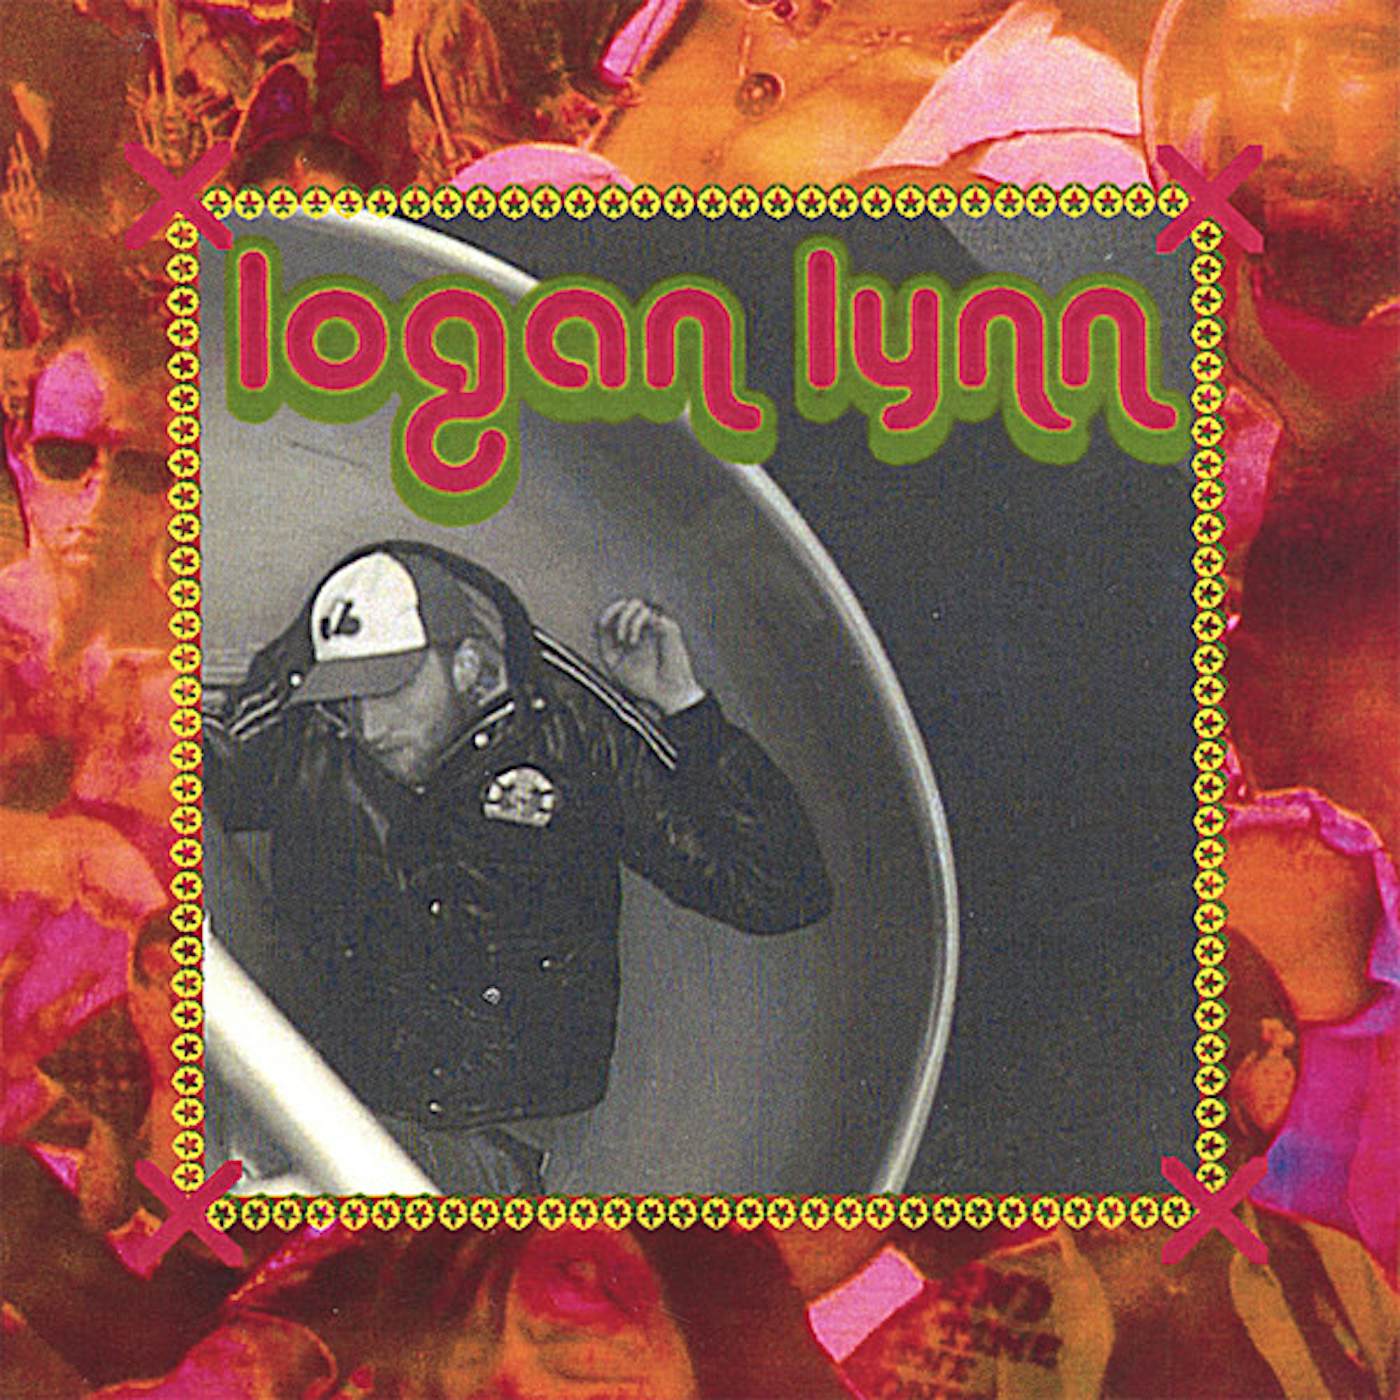 LOGAN LYNN CD